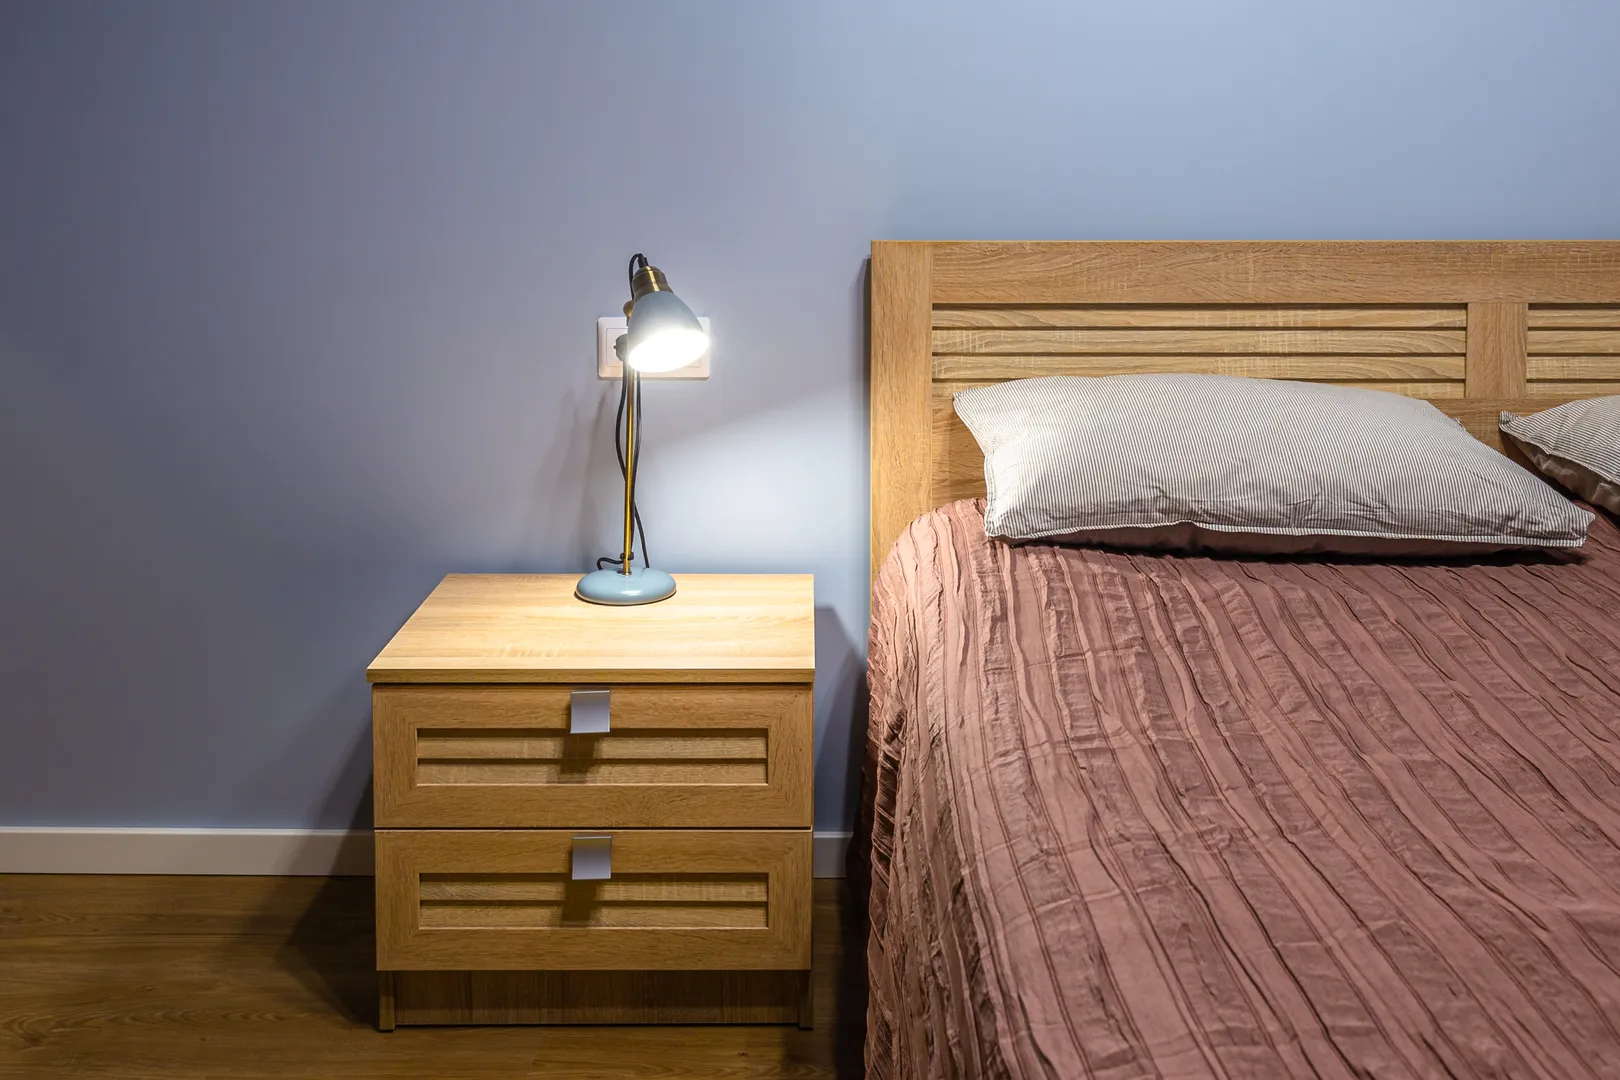 Первая спальня. Прикроватные тумбы и светильники, розетки у кроватей - стандарты для каждой нашей квартиры.